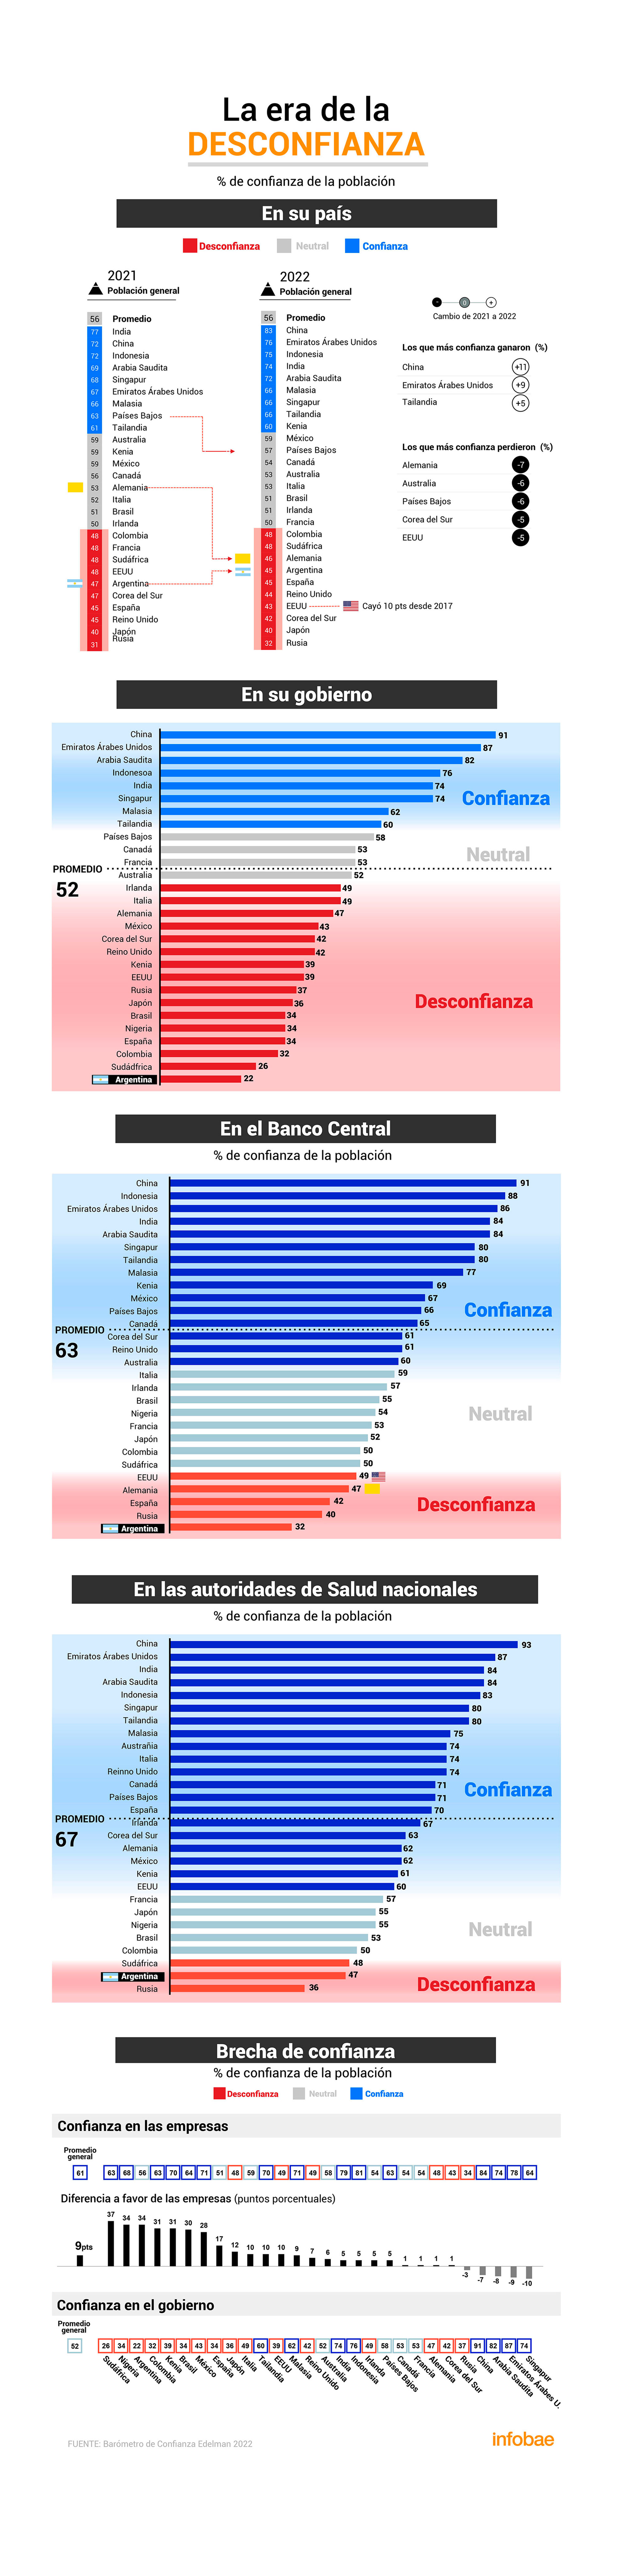 Los resultados de la encuesta arrojan que la Argentina es el país donde menor es la confianza en el Gobierno y en el Banco Central, el segundo de menos confianza en las autoridades de salud y el tercero en que mayor es la brecha entre confianza en las empresas y en el gobierno